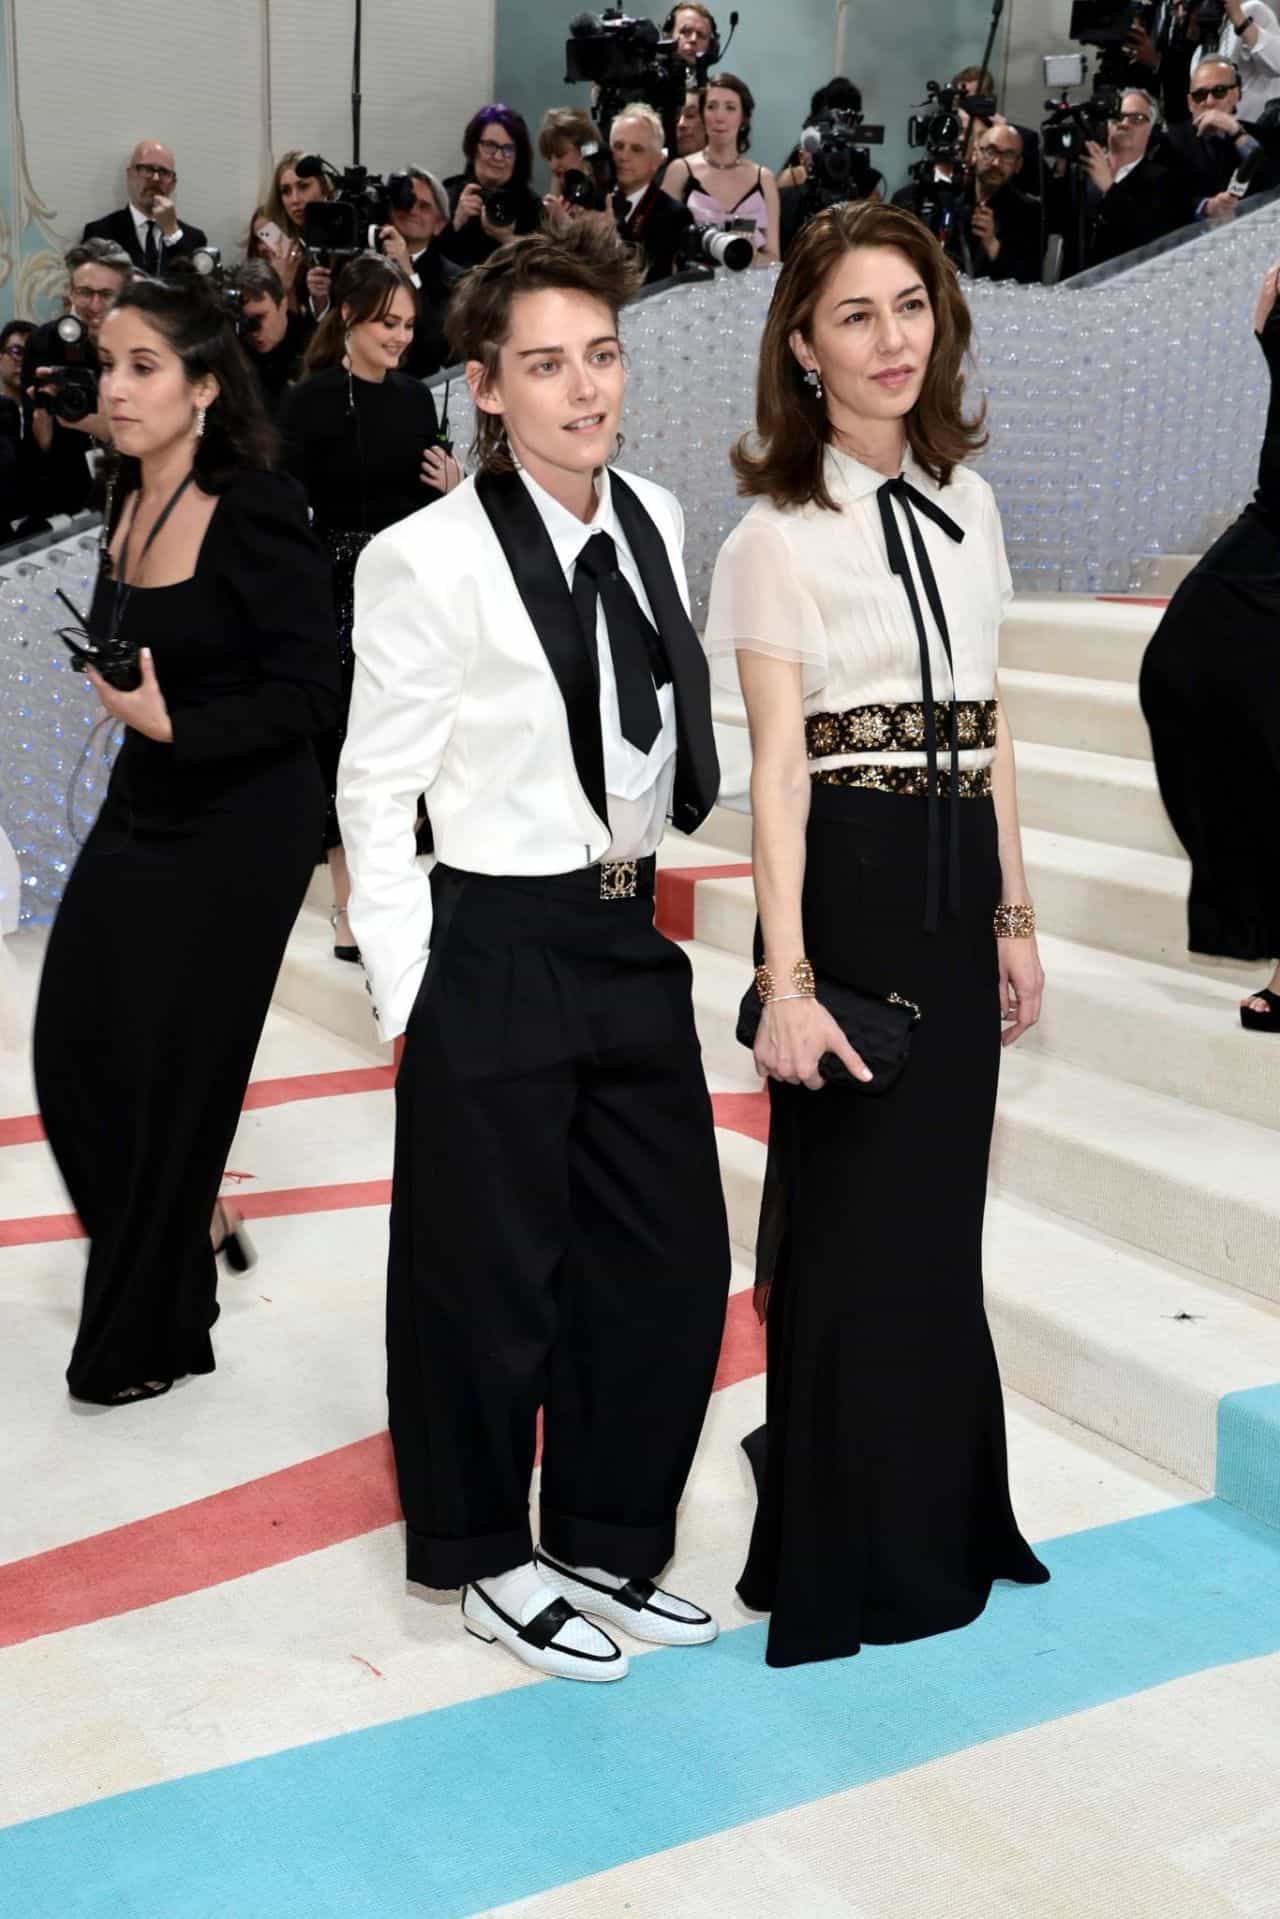 Kristen Stewart Looks Chic at Met Gala Red Carpet 2023 in a Chanel Blazer